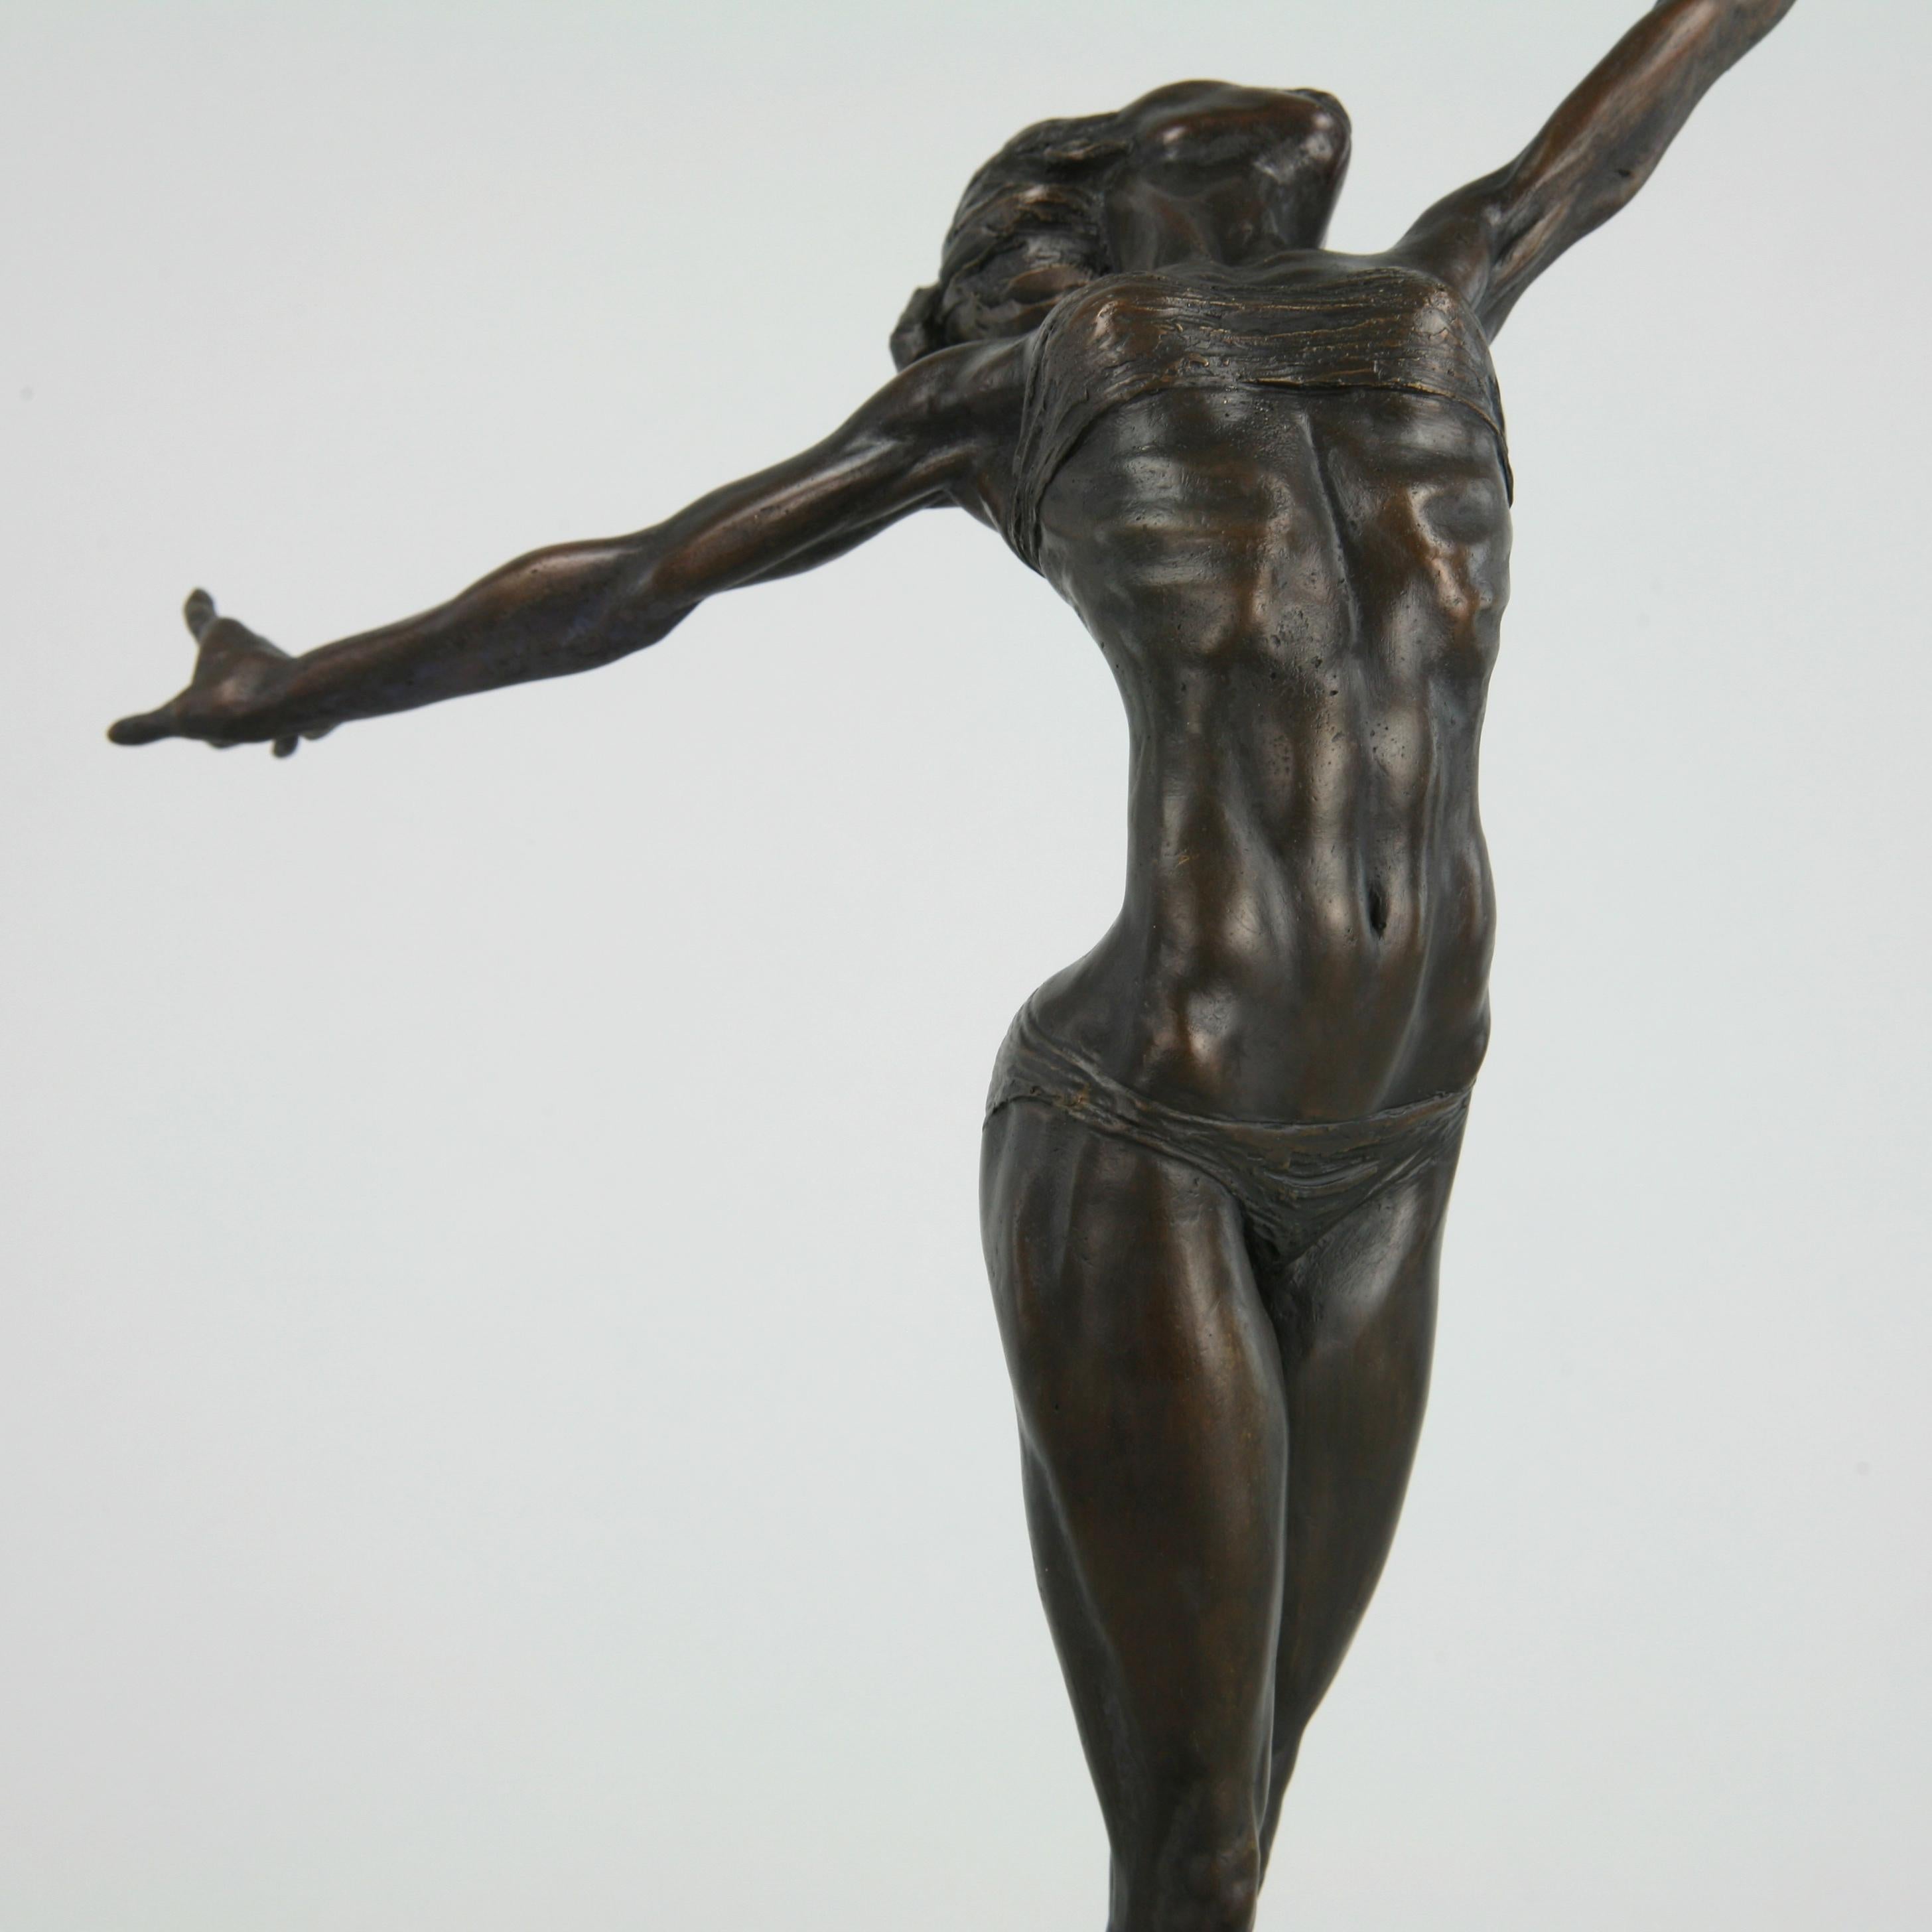 Pole Dancer-original nude figurative bronze sculpture-artwork-contemporary Art For Sale 9